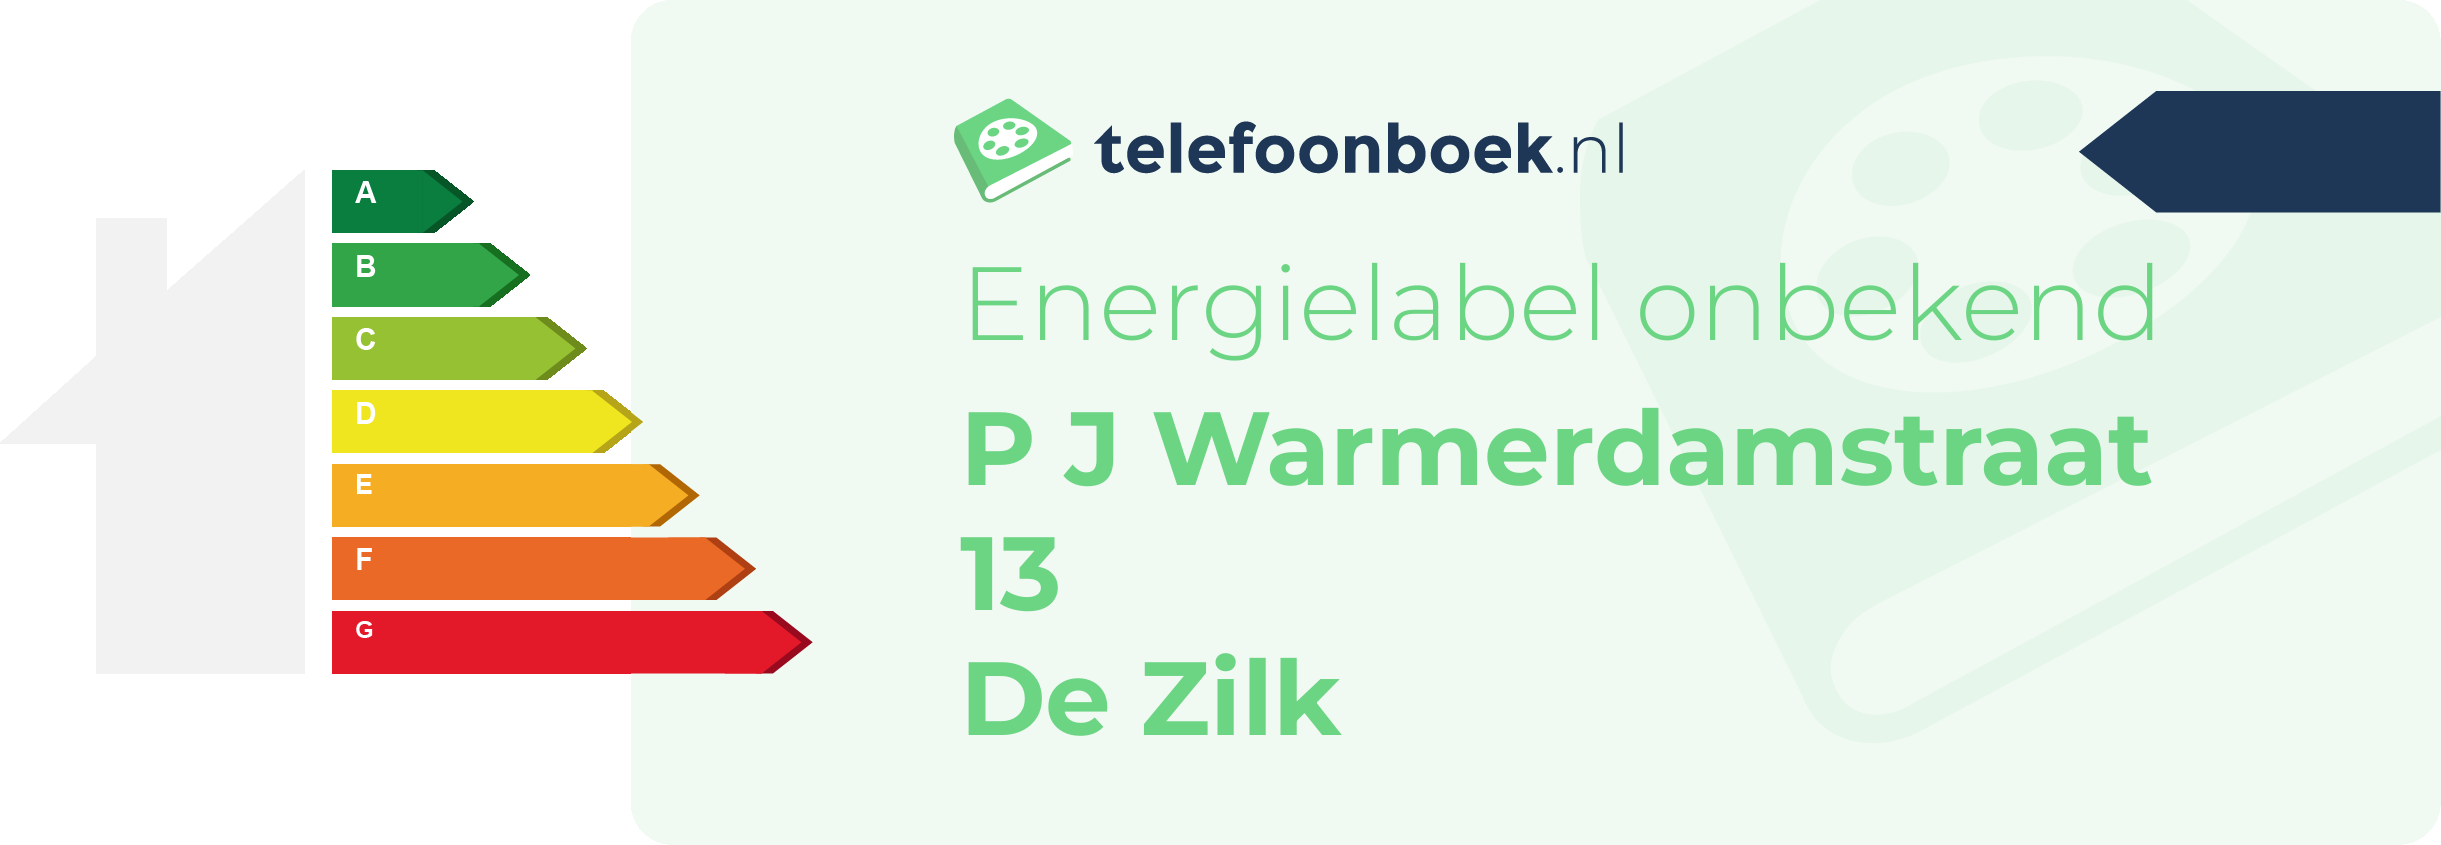 Energielabel P J Warmerdamstraat 13 De Zilk